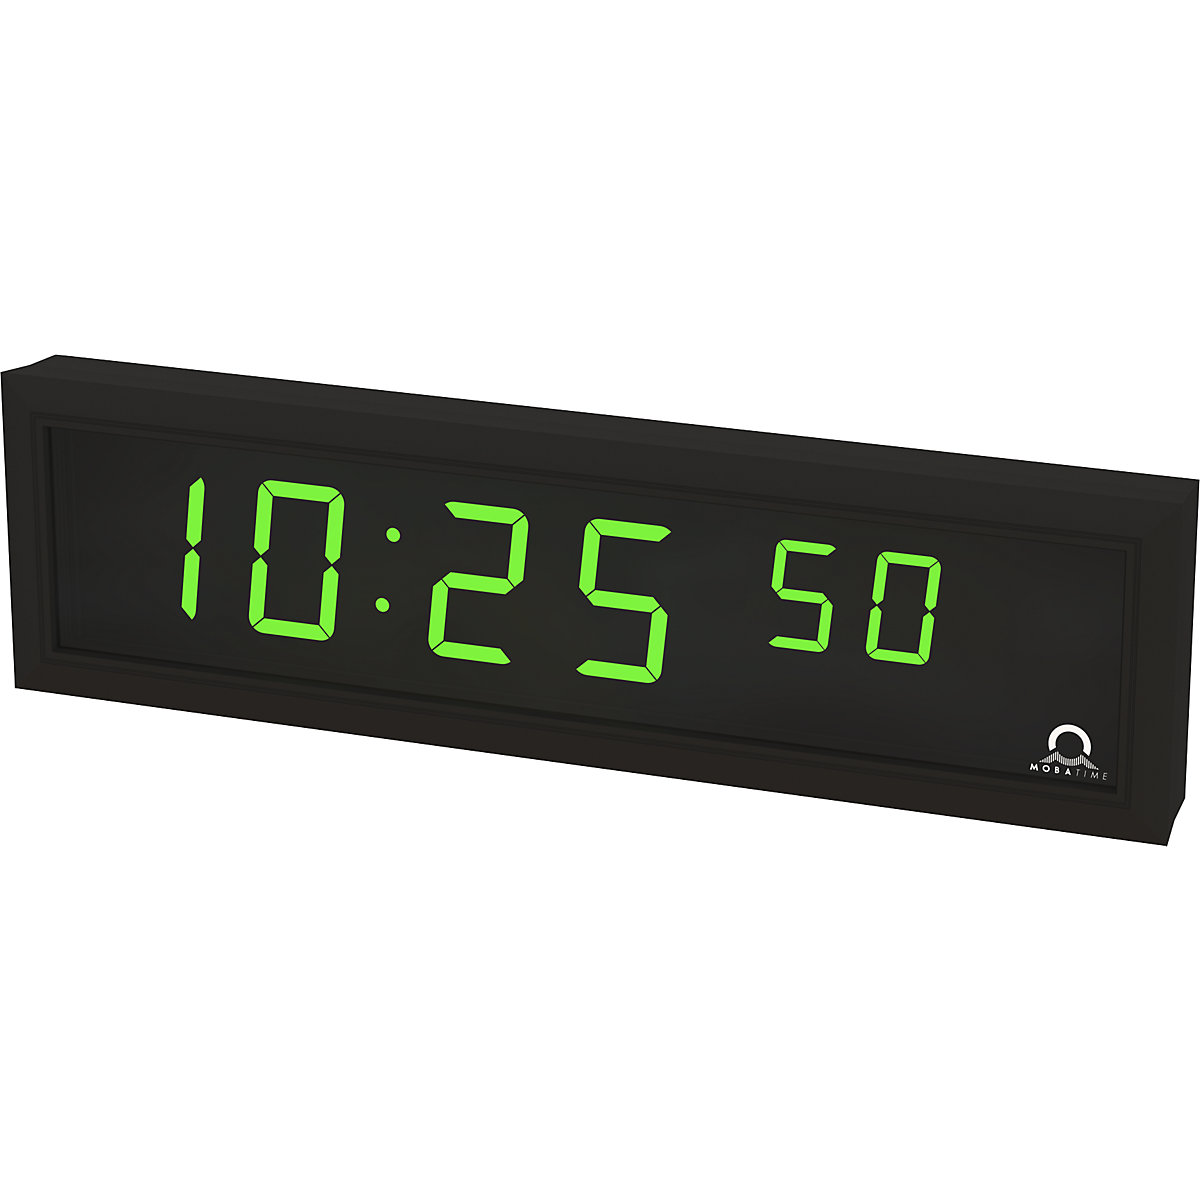 Digitální LED hodiny, v x š x h 118 x 423 x 39 mm, černá, zelená LED indikace-4